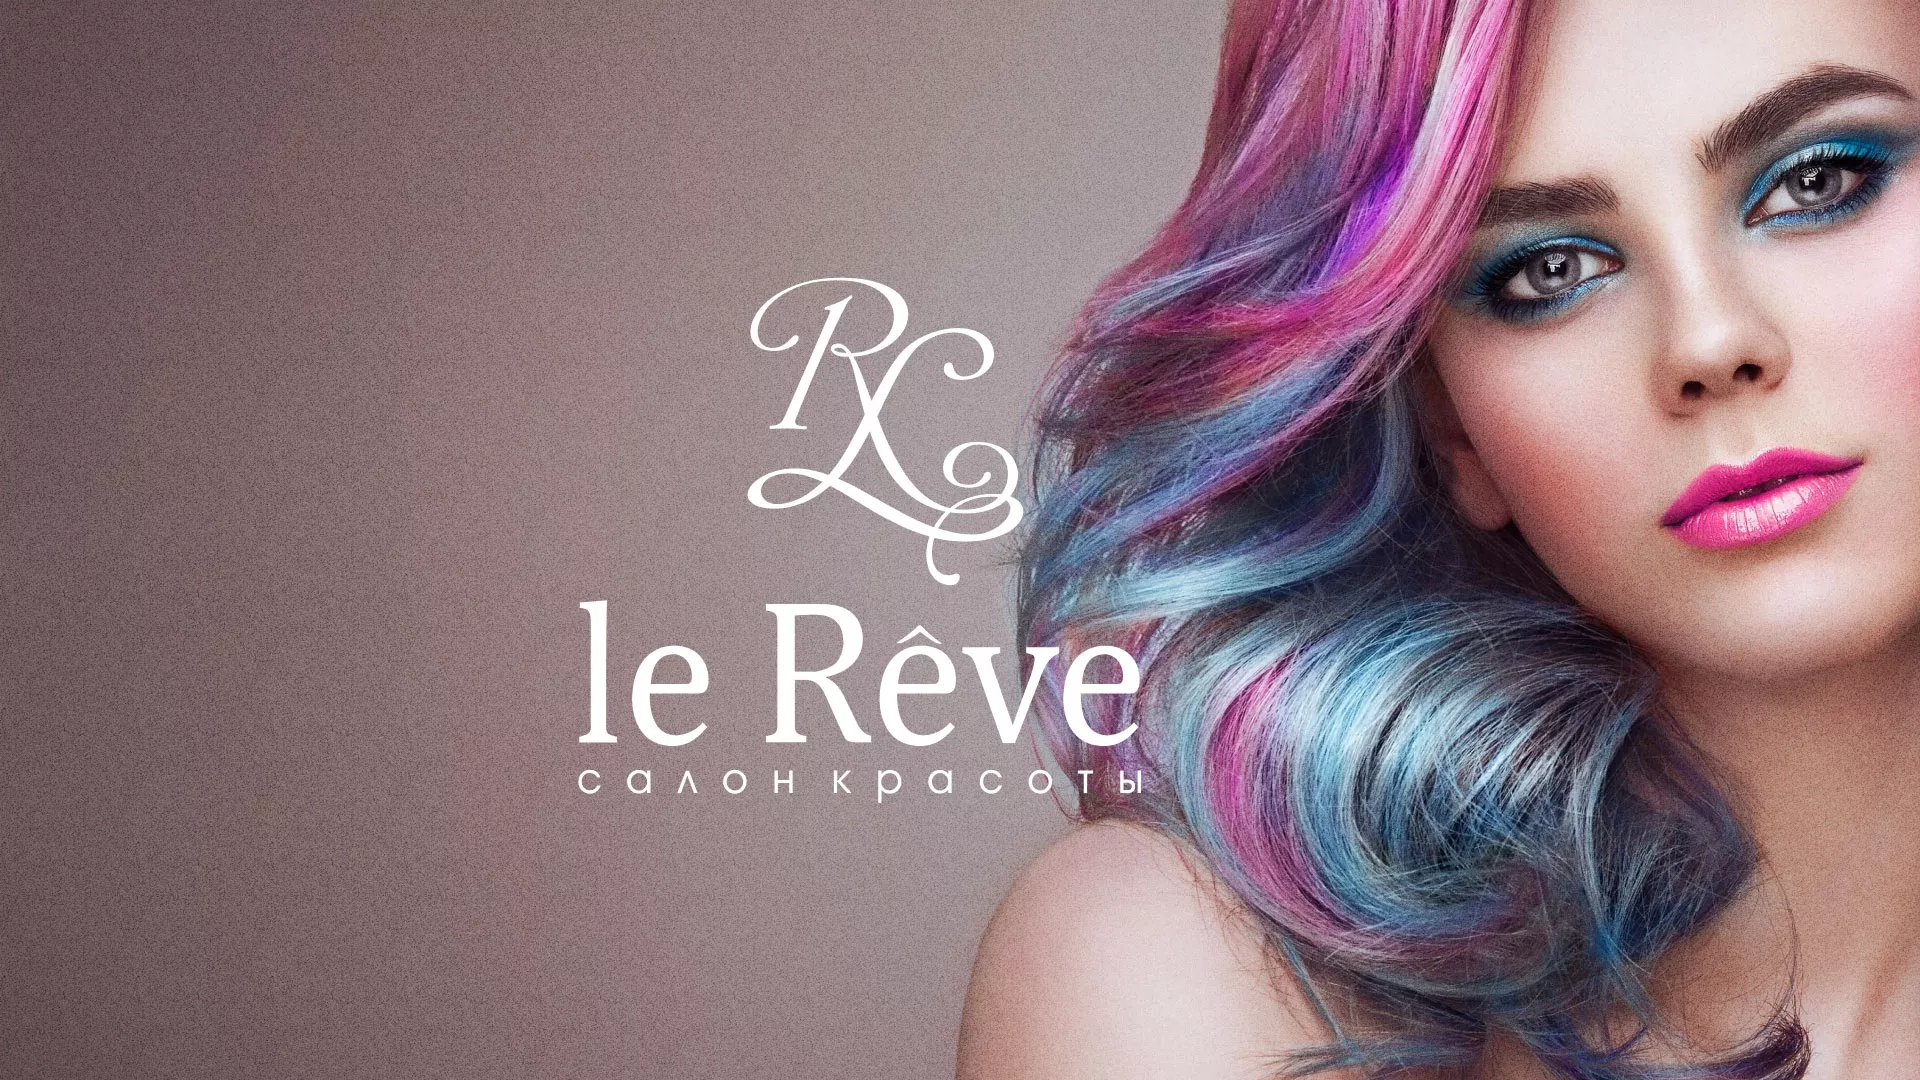 Создание сайта для салона красоты «Le Reve» в Тырныаузе